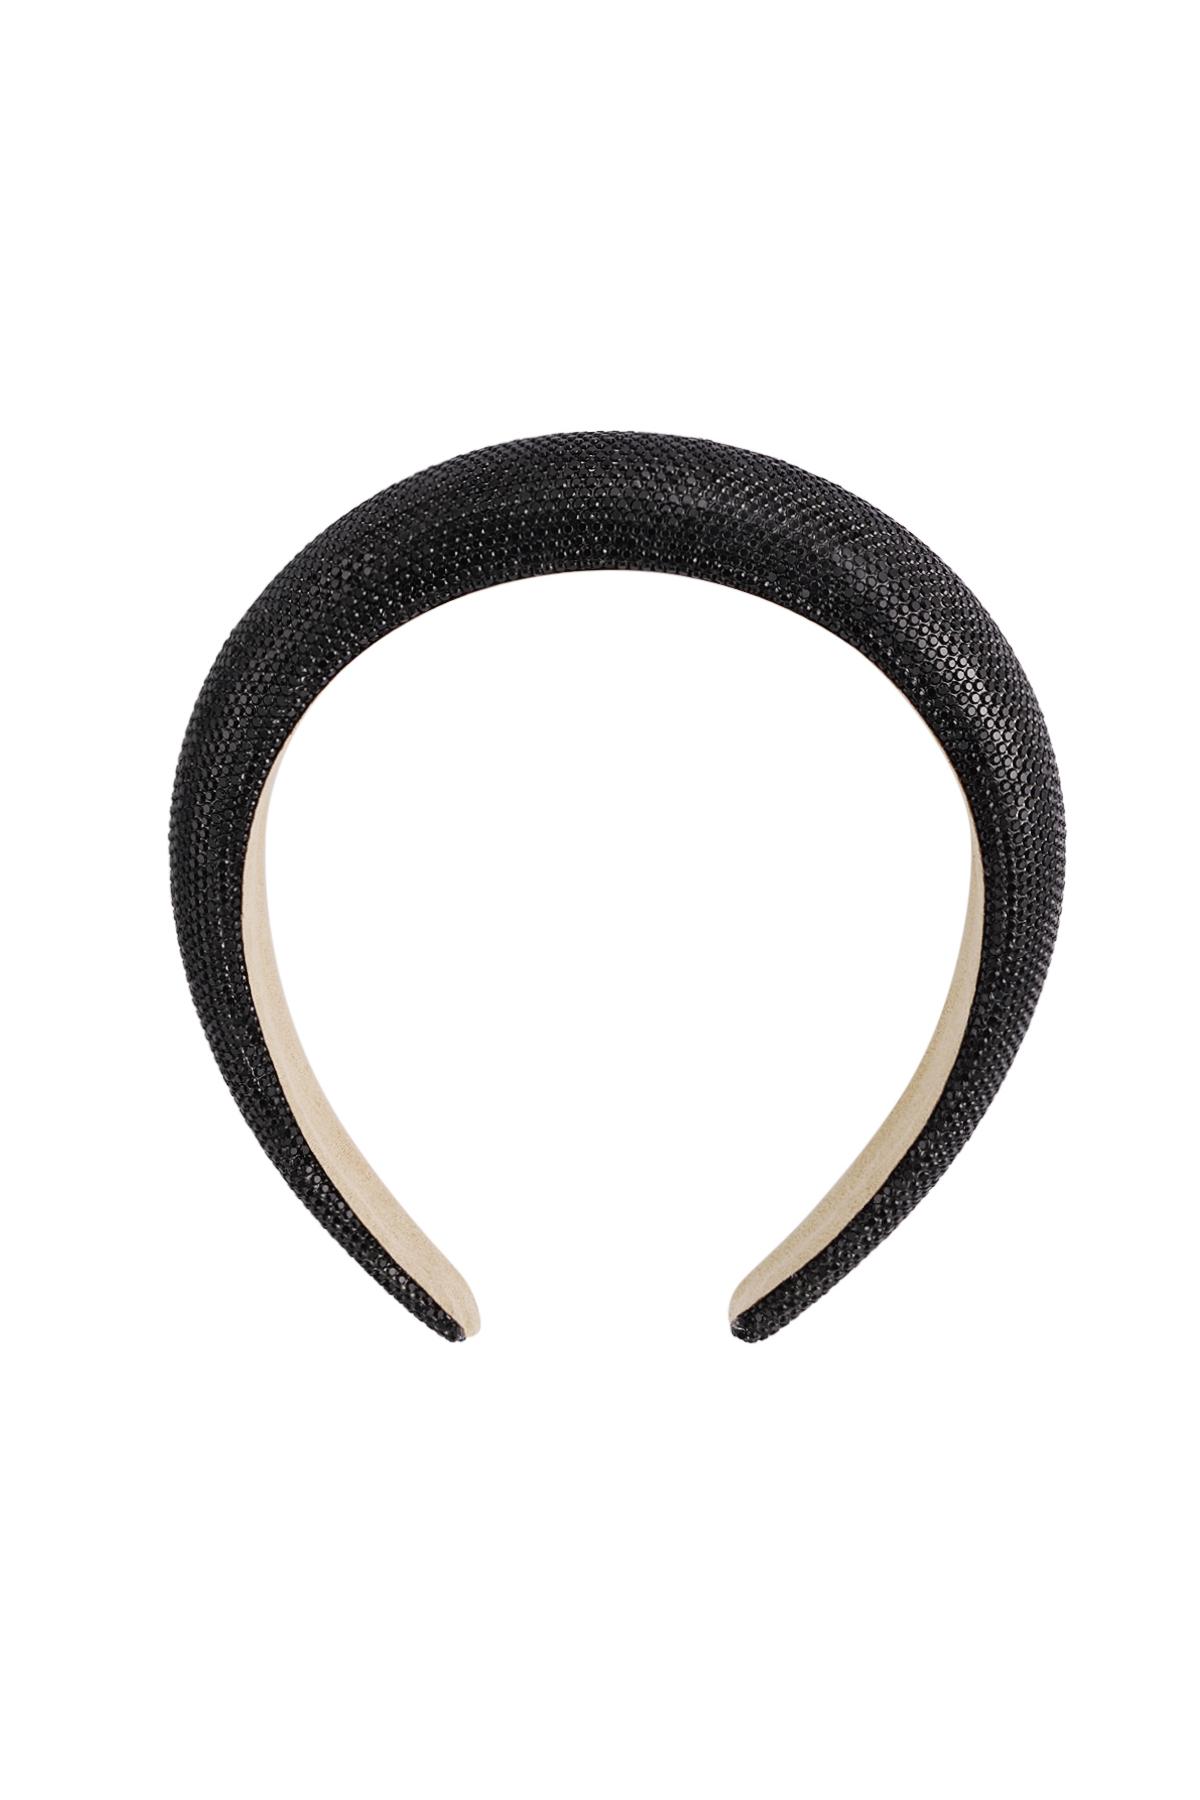 Haarband Glitzer - schwarz Kunststoff